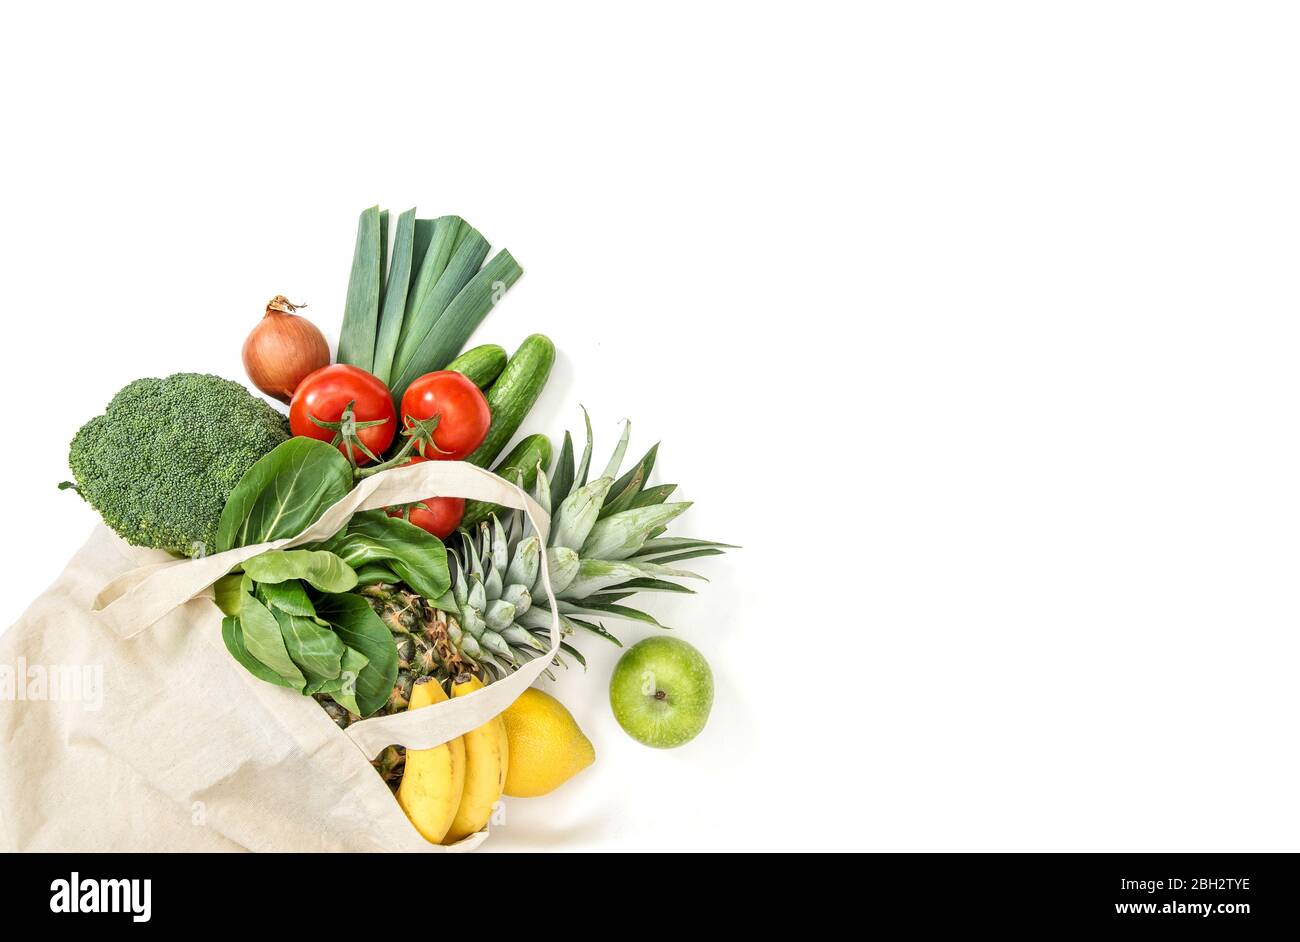 Une nourriture saine. Fruits biologiques frais légumes. Tomate, concombre, salade, brocoli, oignon, pomme, banane, ananas Banque D'Images